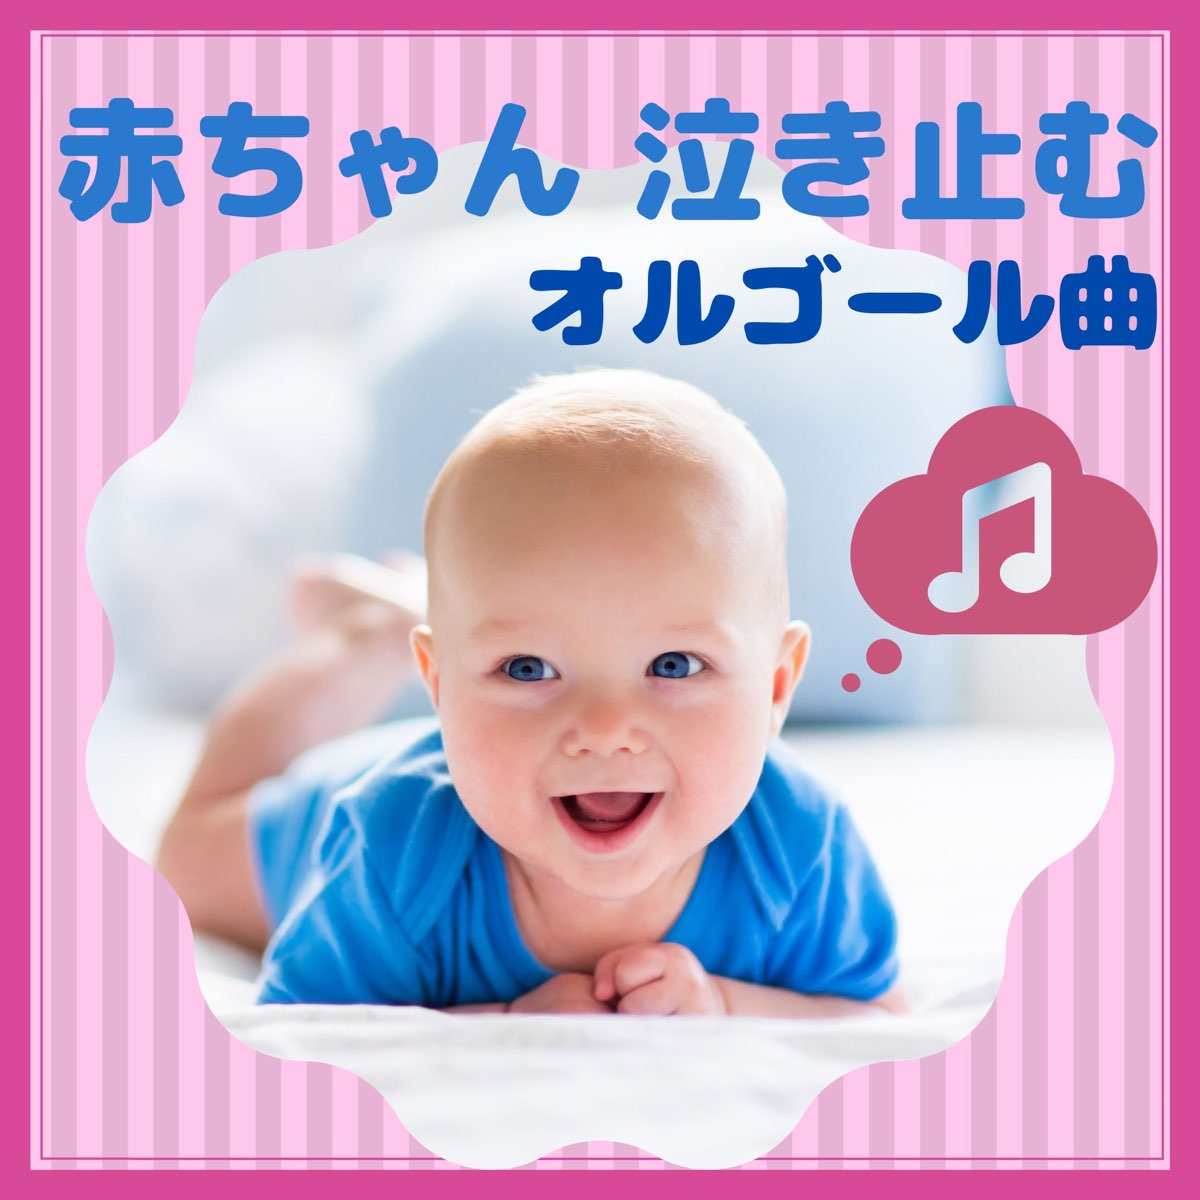 赤ちゃん オルゴールの 赤ちゃん 泣き止むオルゴール曲 心が落ち着くサウンド 子育て 新生児 をapple Musicで